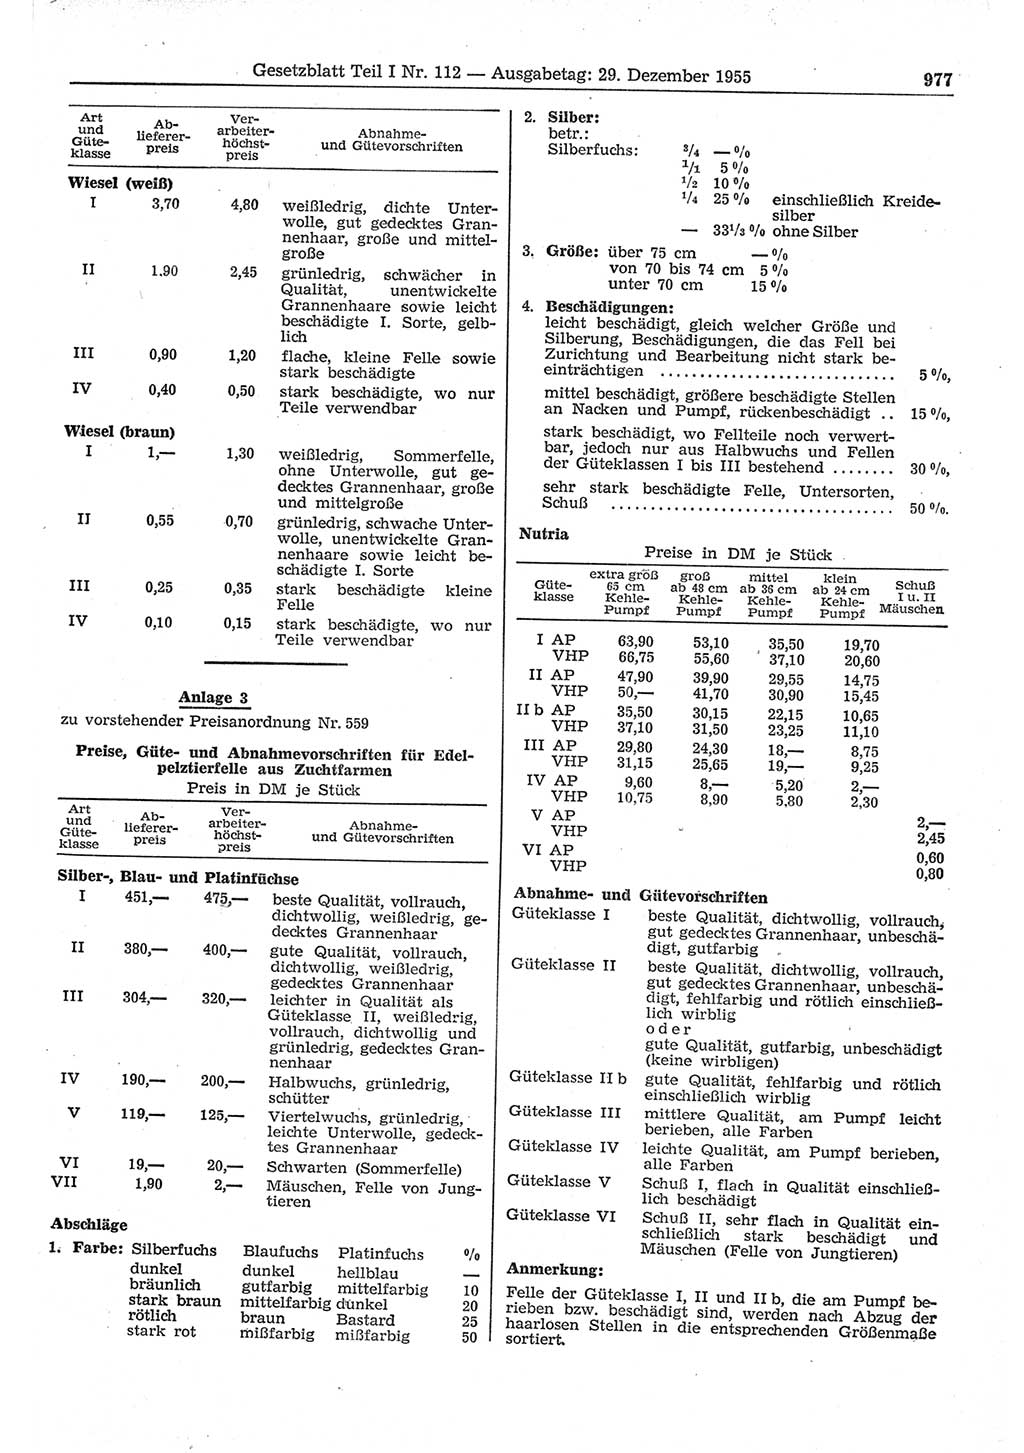 Gesetzblatt (GBl.) der Deutschen Demokratischen Republik (DDR) Teil Ⅰ 1955, Seite 977 (GBl. DDR Ⅰ 1955, S. 977)